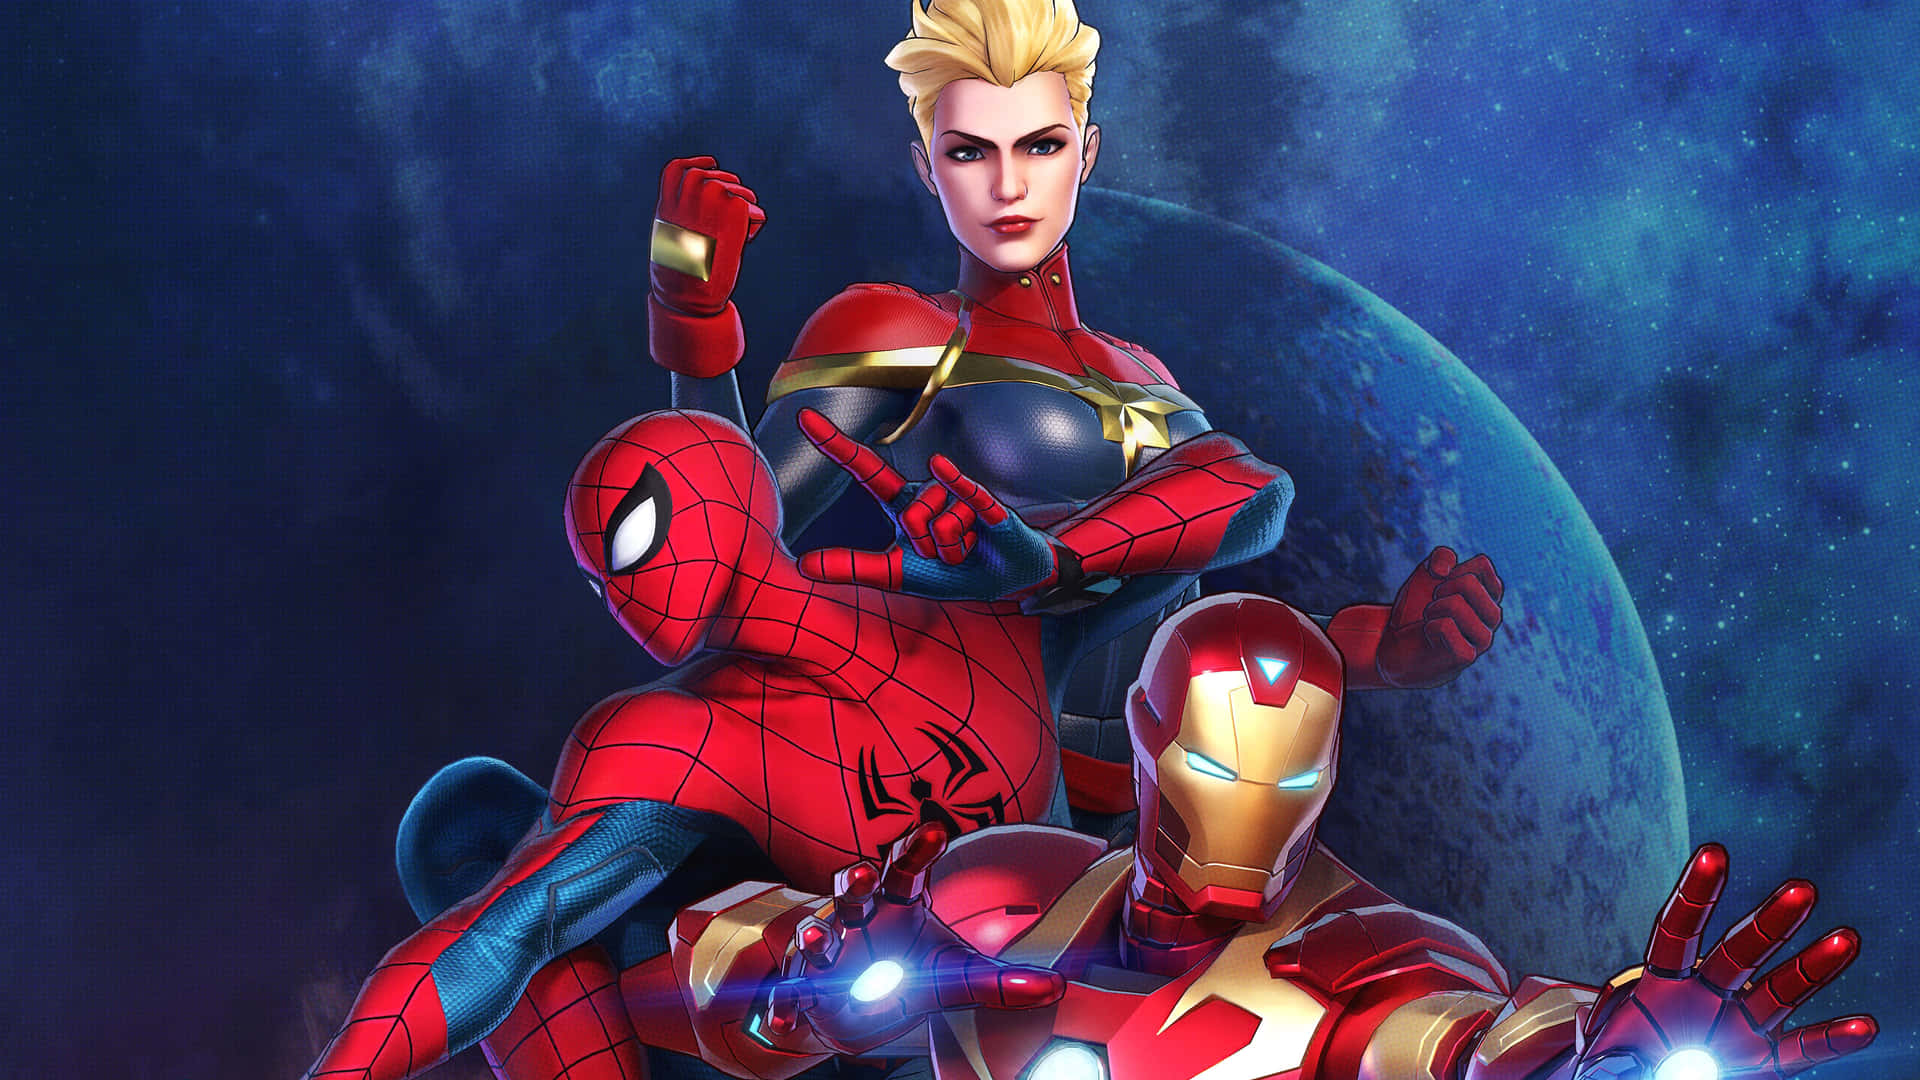 Spiderman Y Iron Man Se Unen Para Luchar Por La Justicia. Fondo de pantalla